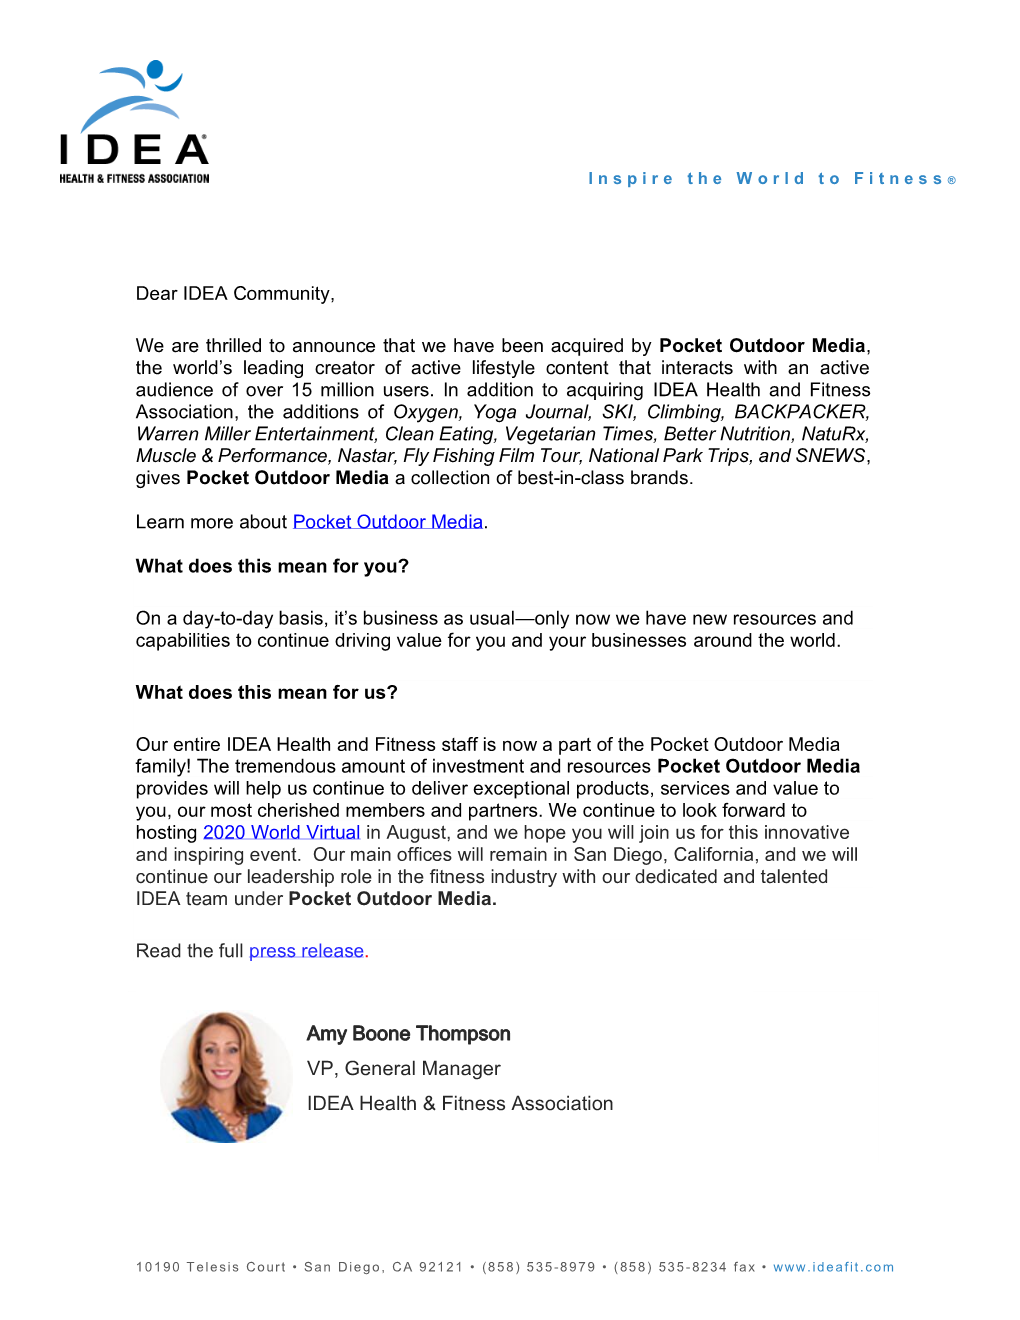 Letter of IDEA Announcement